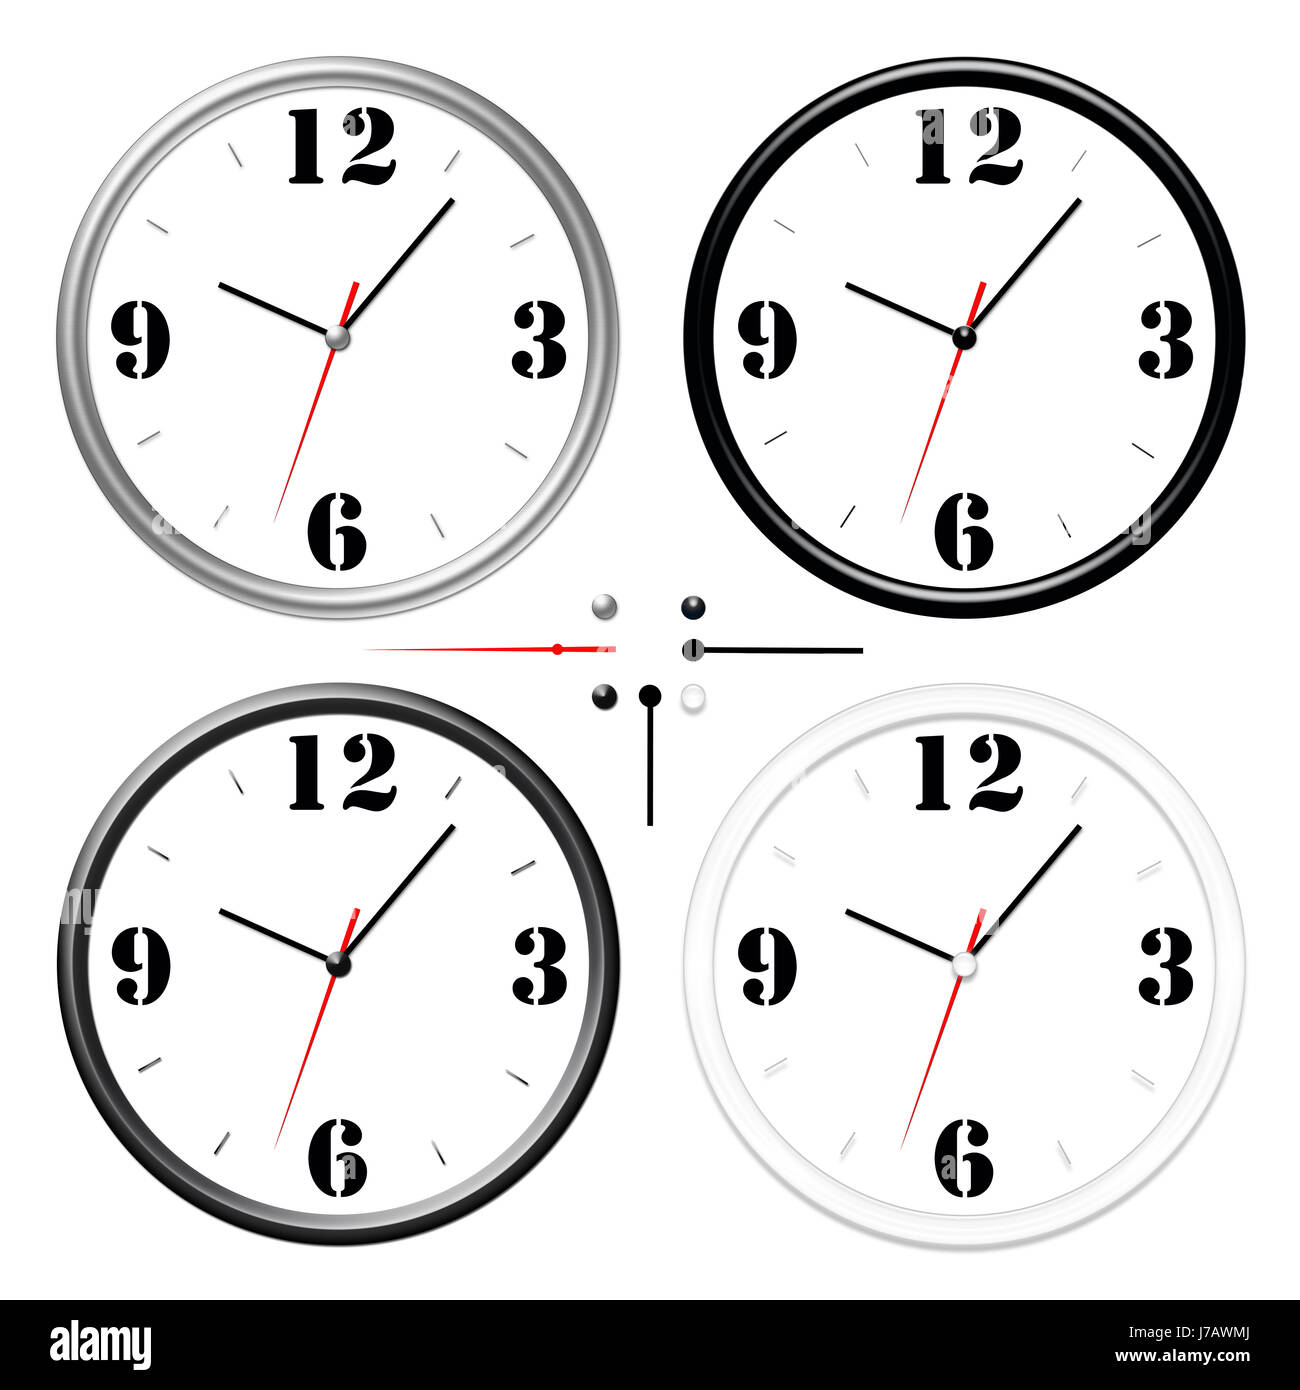 Indicar muestran cuatro minutos del puntero de reloj horas indican mostrar swarthy negro Foto de stock